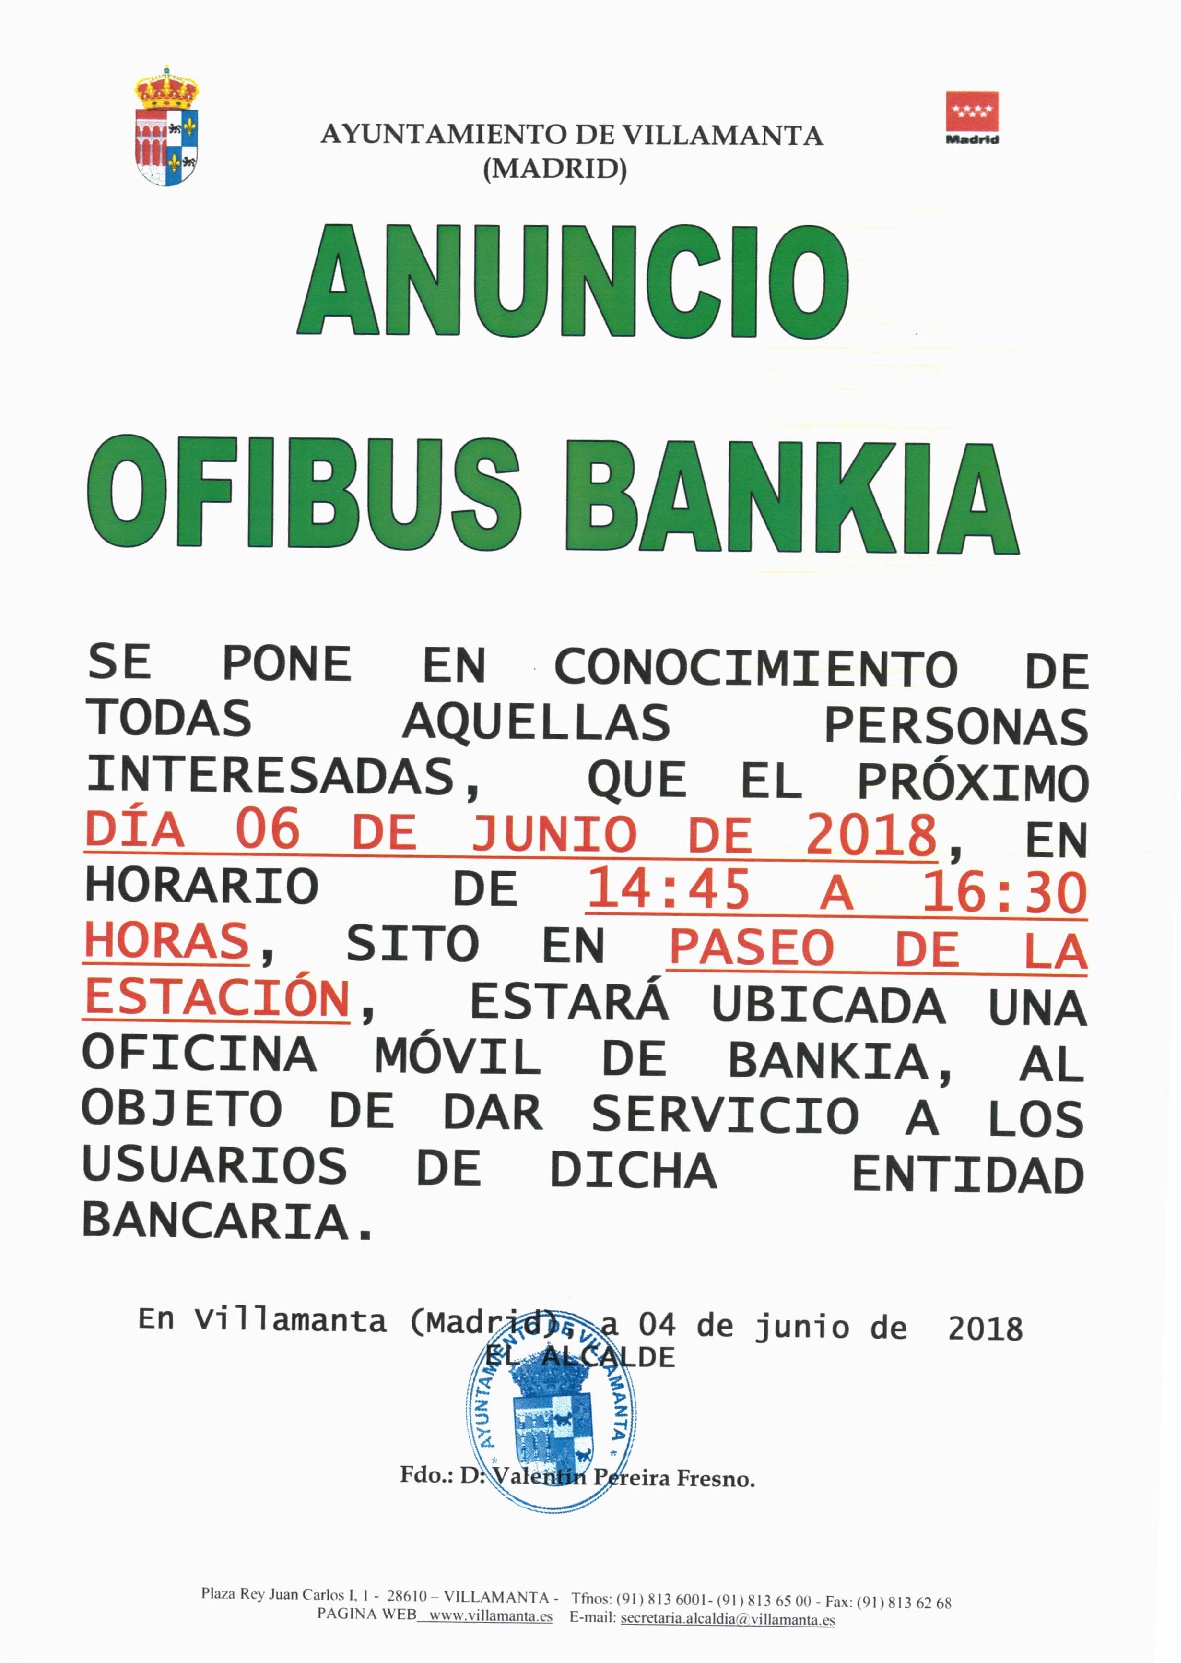 Ofibus Bankia 6 de junio de 2018